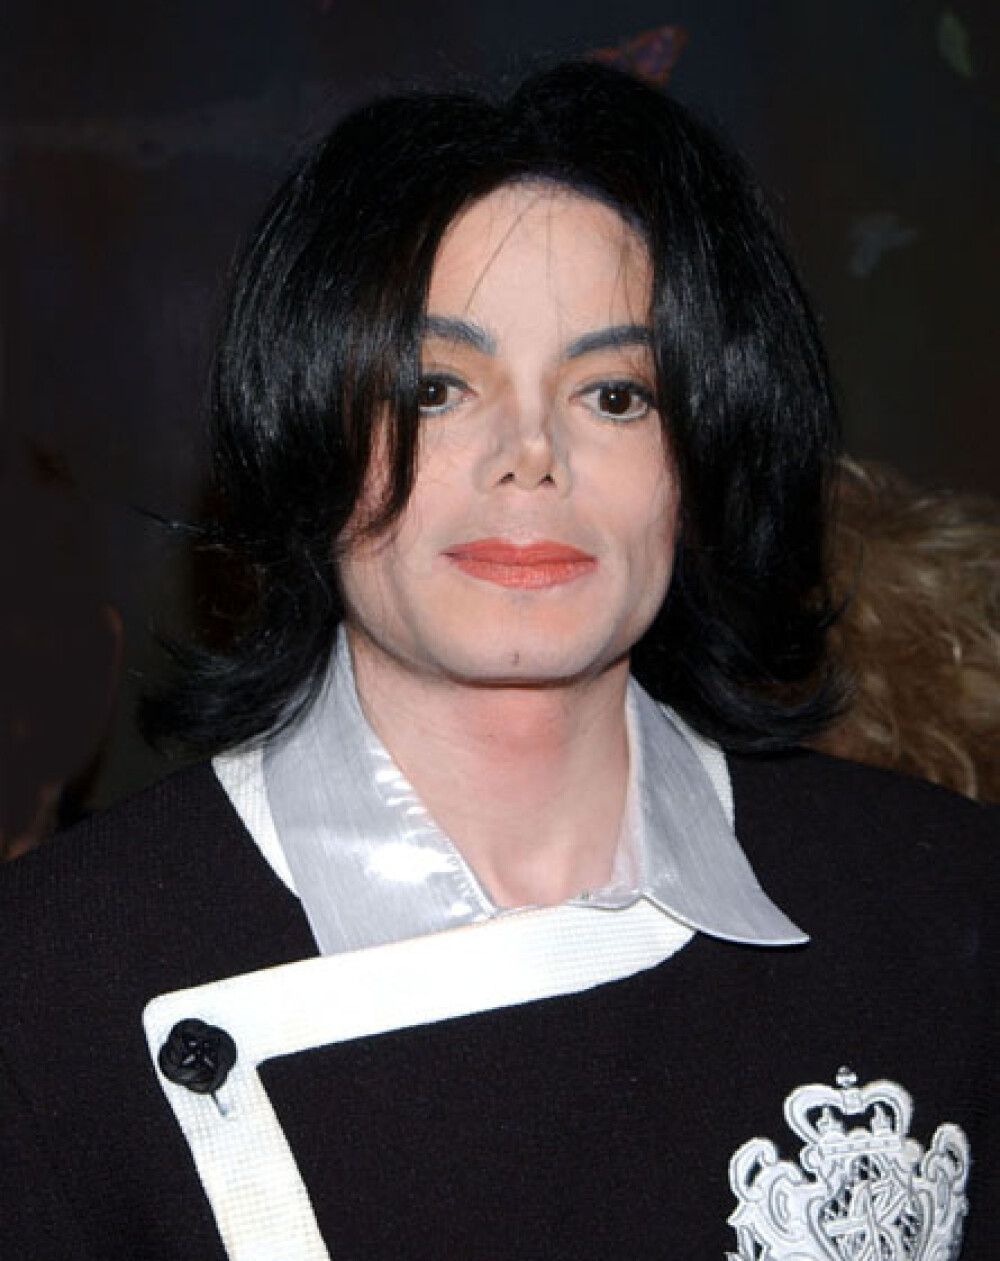 RETROSPECTIVA De ce il iubim pe Michael Jackson! - Imaginea 99